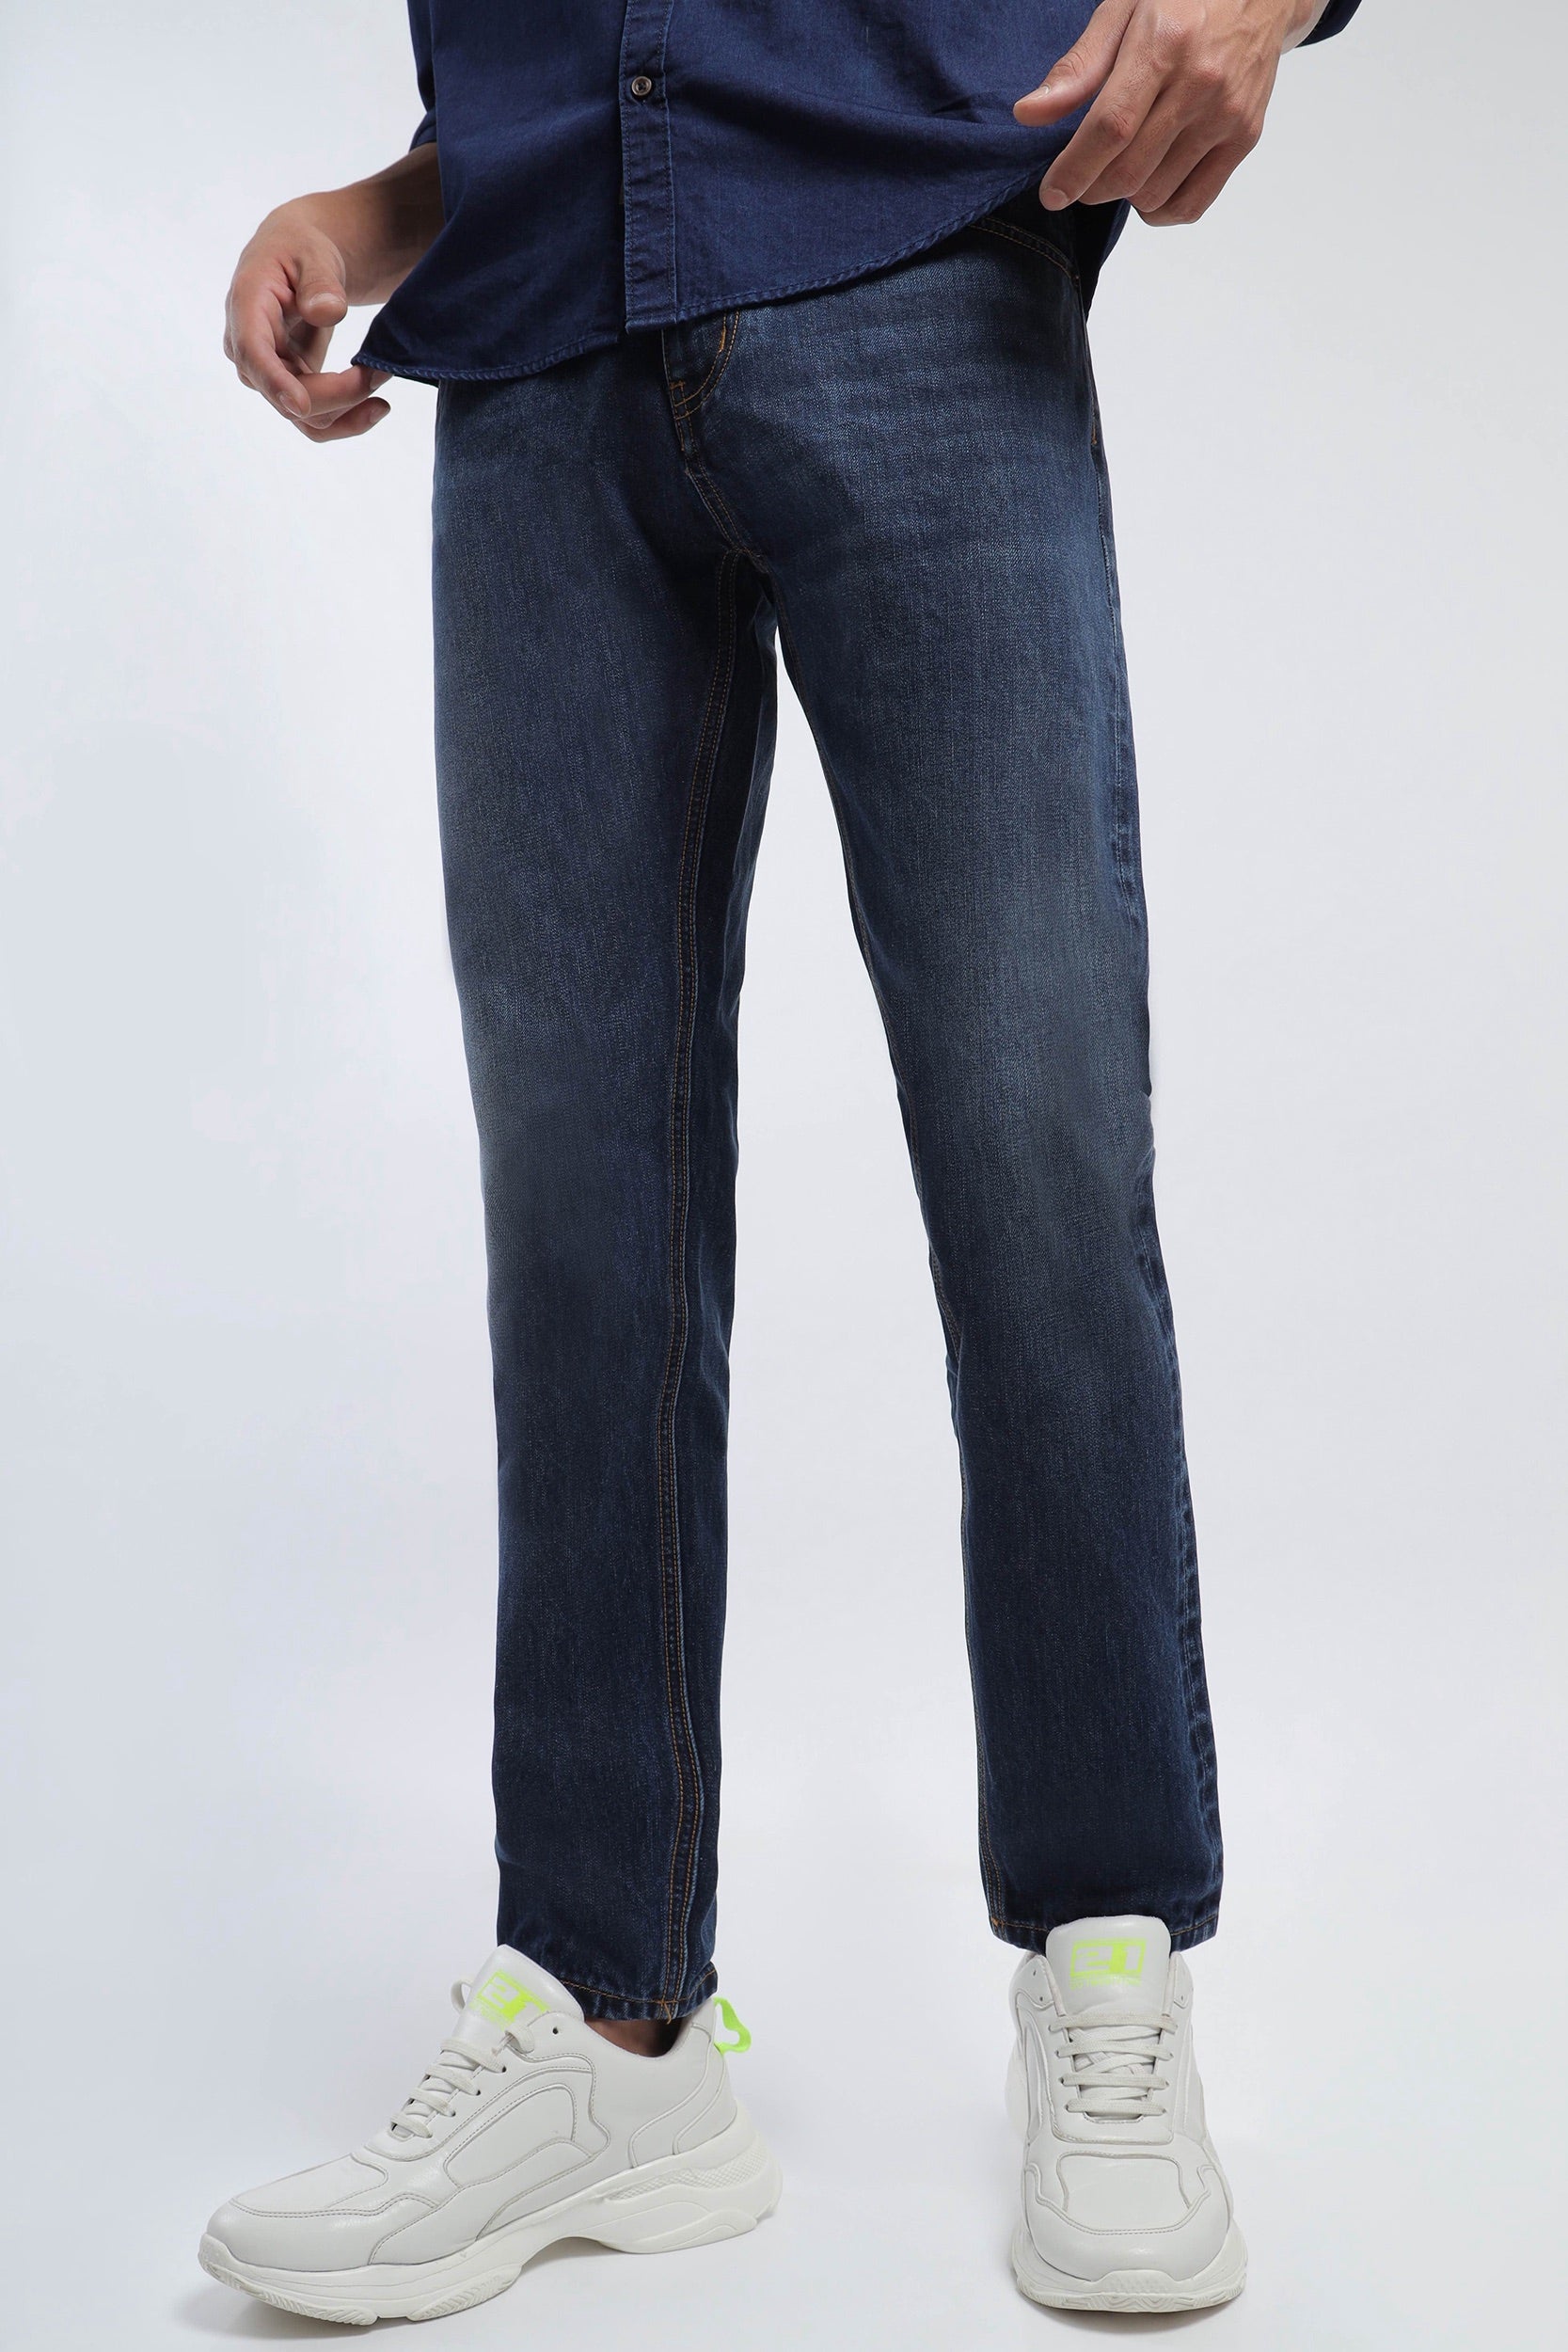 Gap Slim & Skinny Jeans for Men